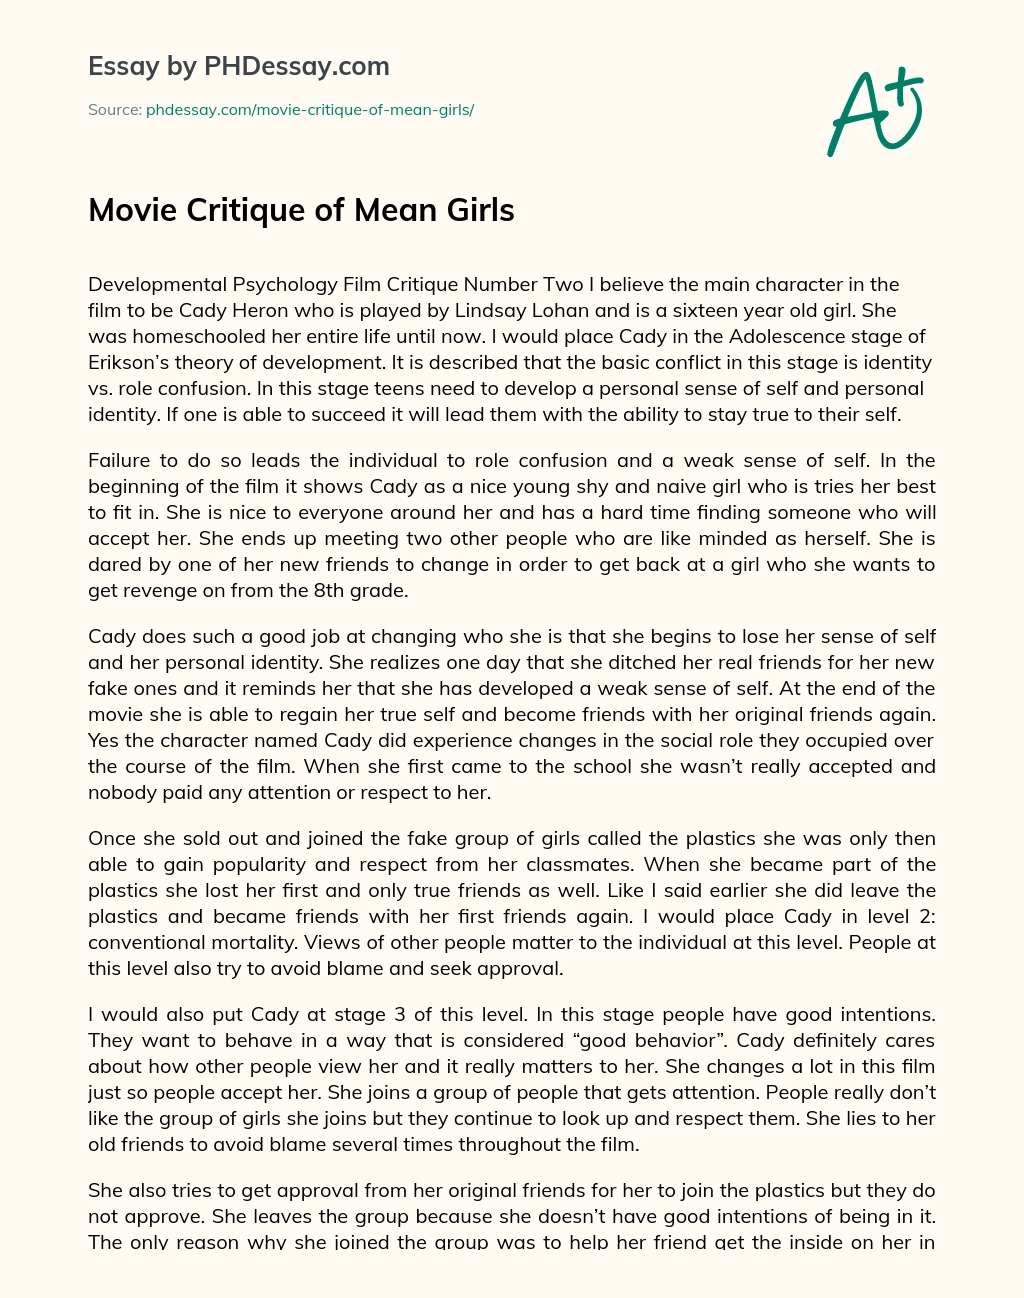 Movie Critique of Mean Girls essay